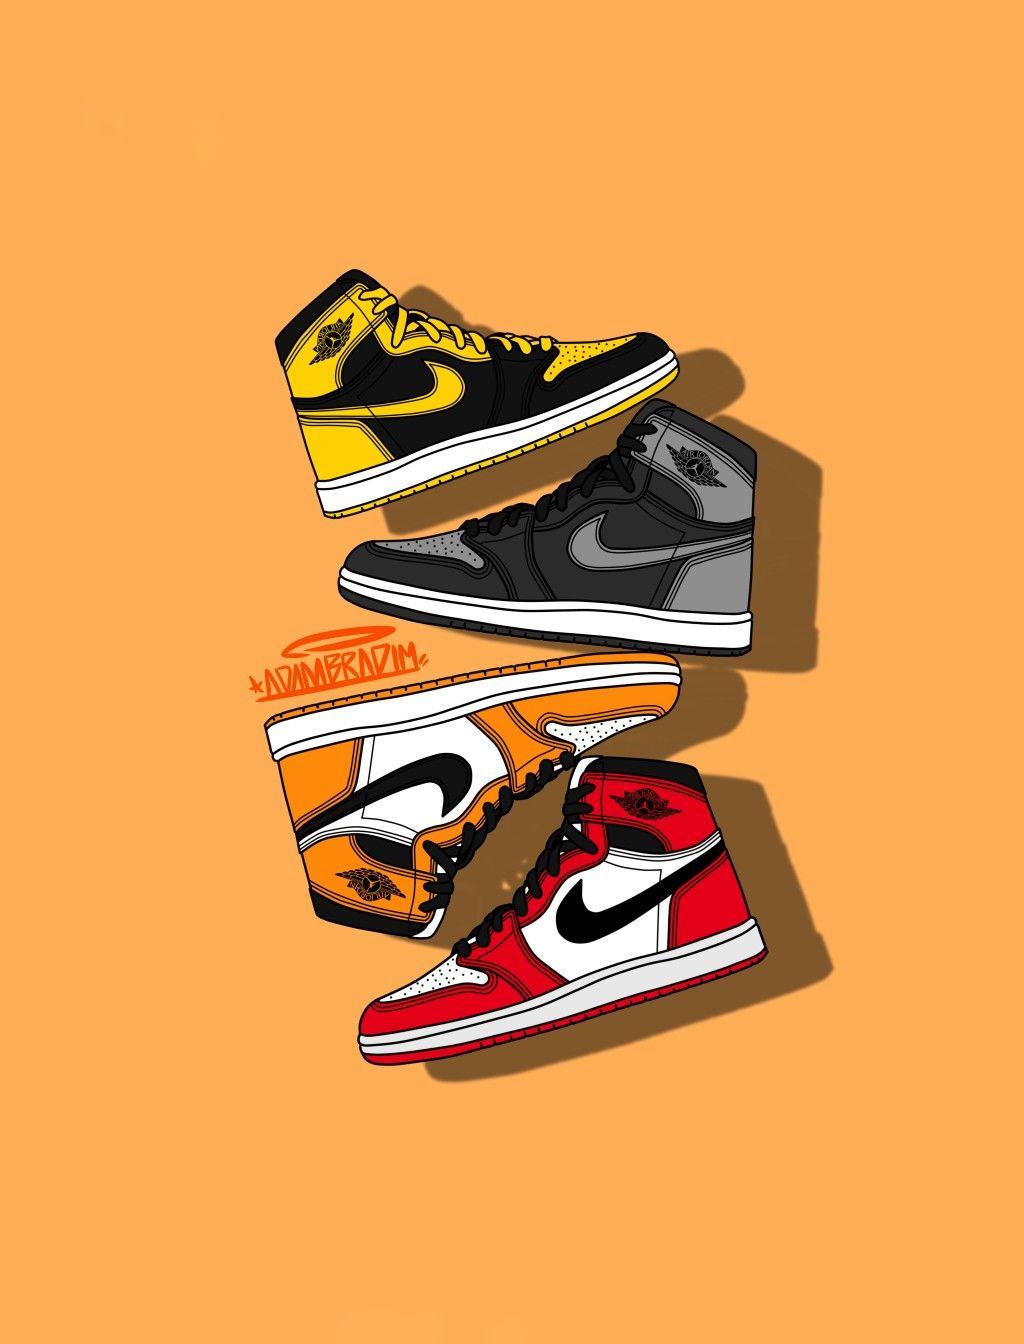 Nike Jordan 1 Wallpapers - Top Free Nike Jordan 1 Backgrounds ...